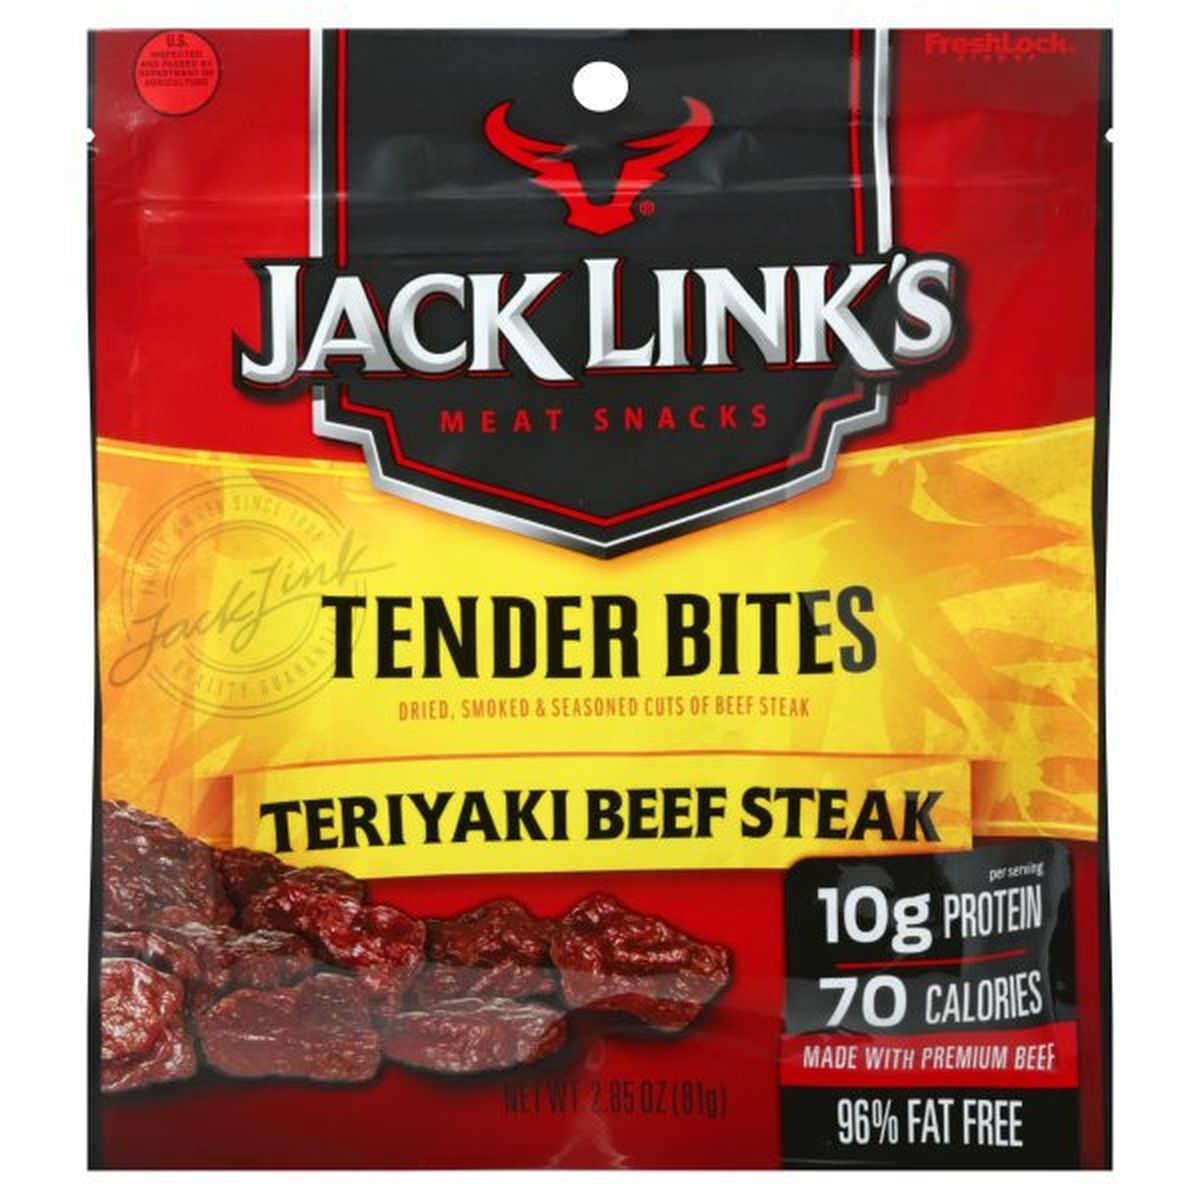 Calories in Jack Link's Tender Bites, Teriyaki Beef Steak